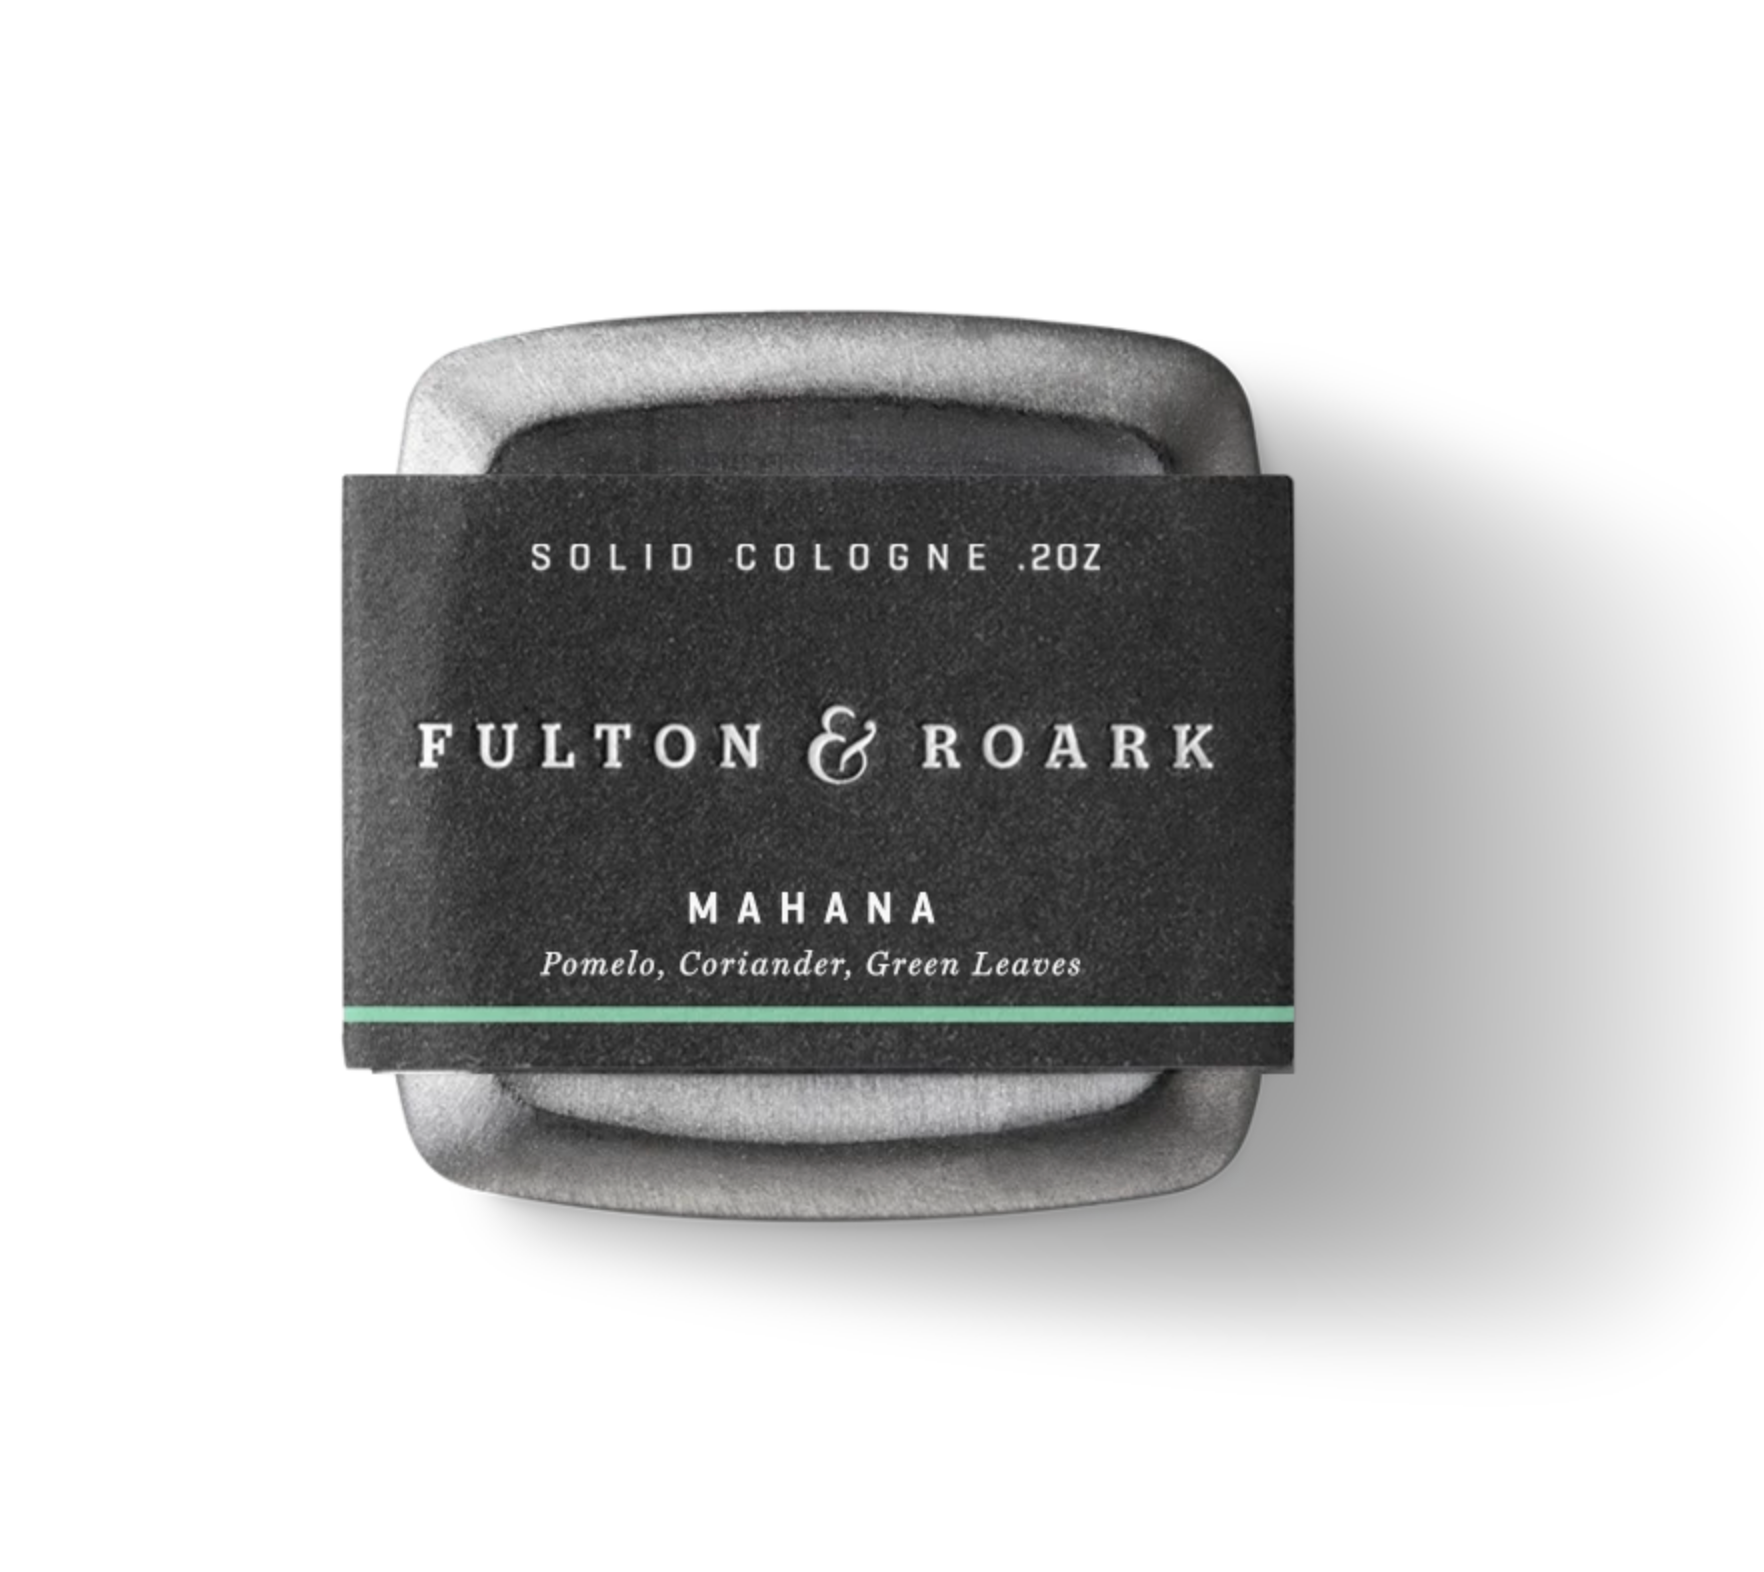 Fulton & Roark Mahana Solid Cologne